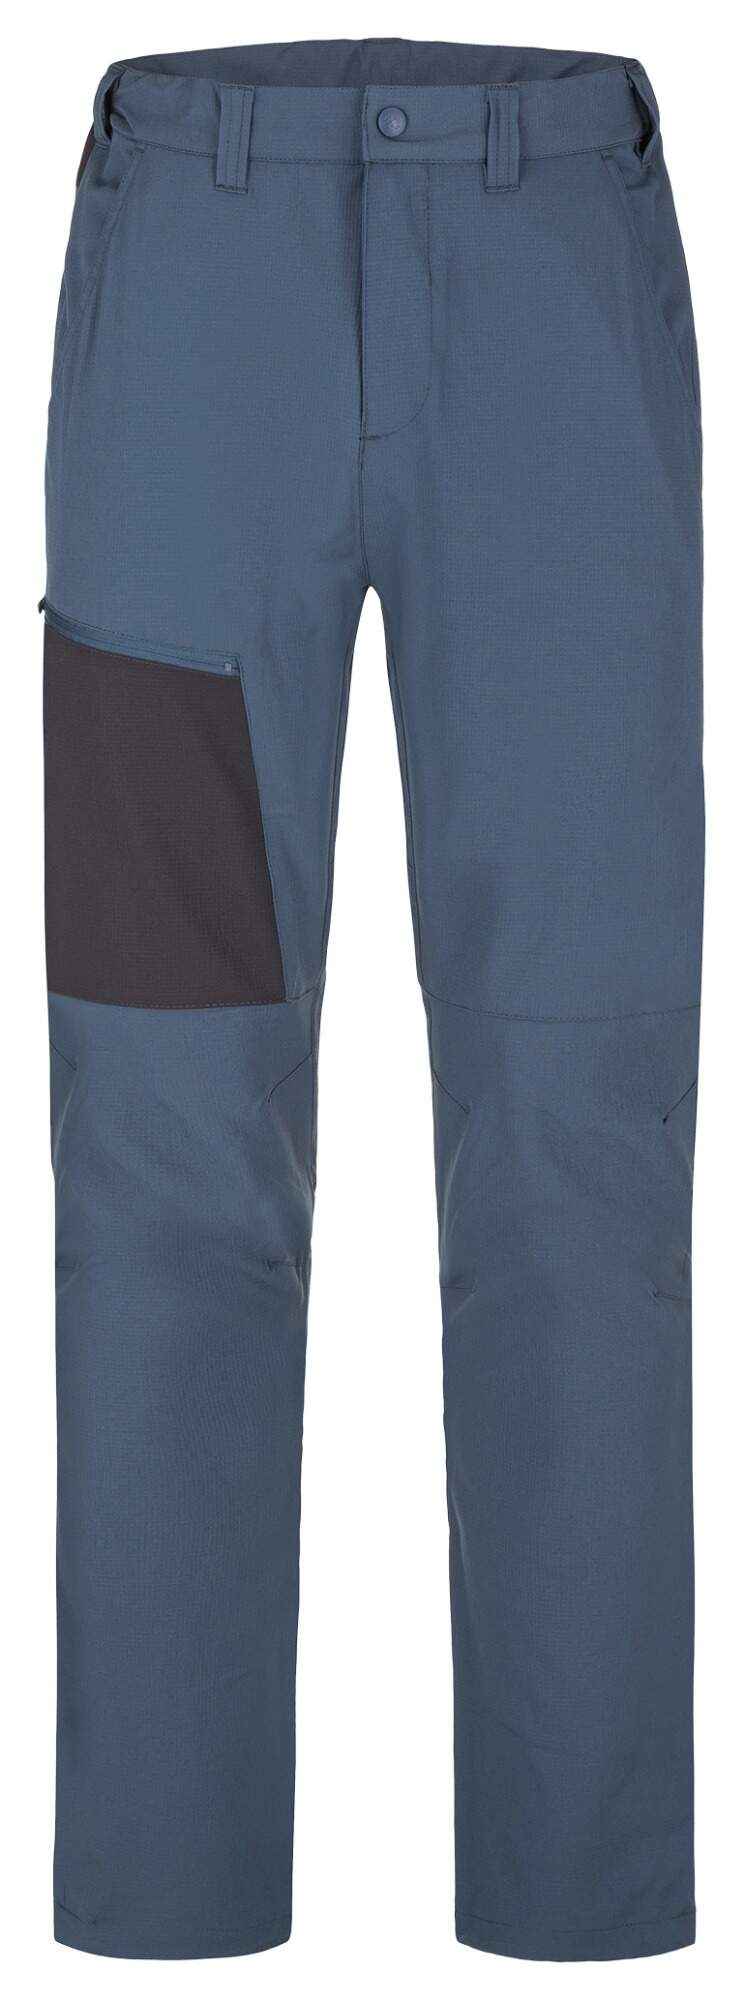 Pánské sportovní kalhoty Loap Uzer modrá XL